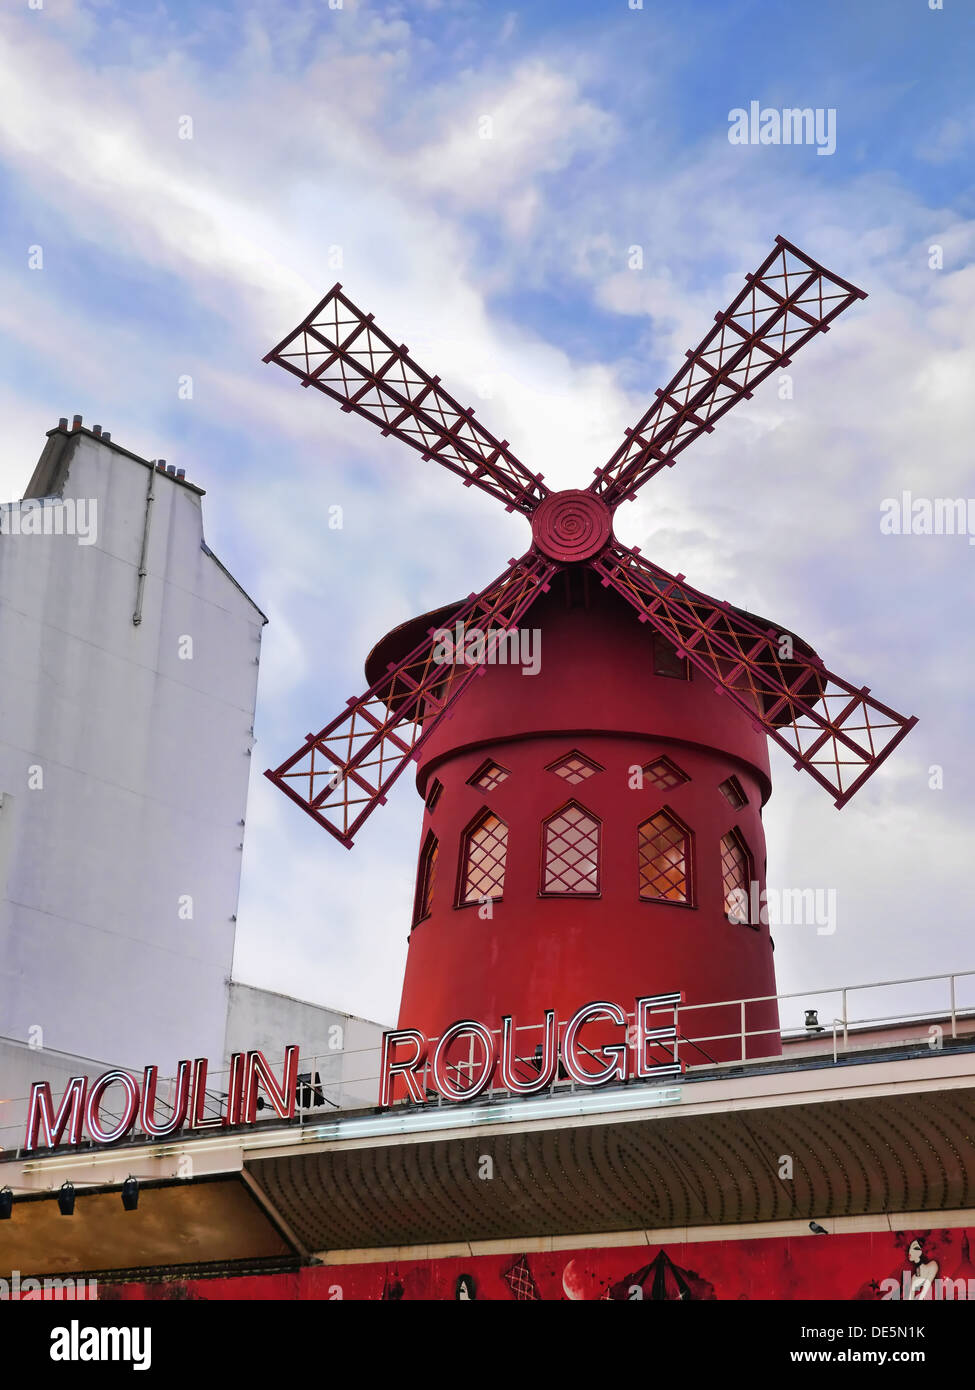 Le célèbre Moulin Rouge bâtiment à Paris, France Banque D'Images